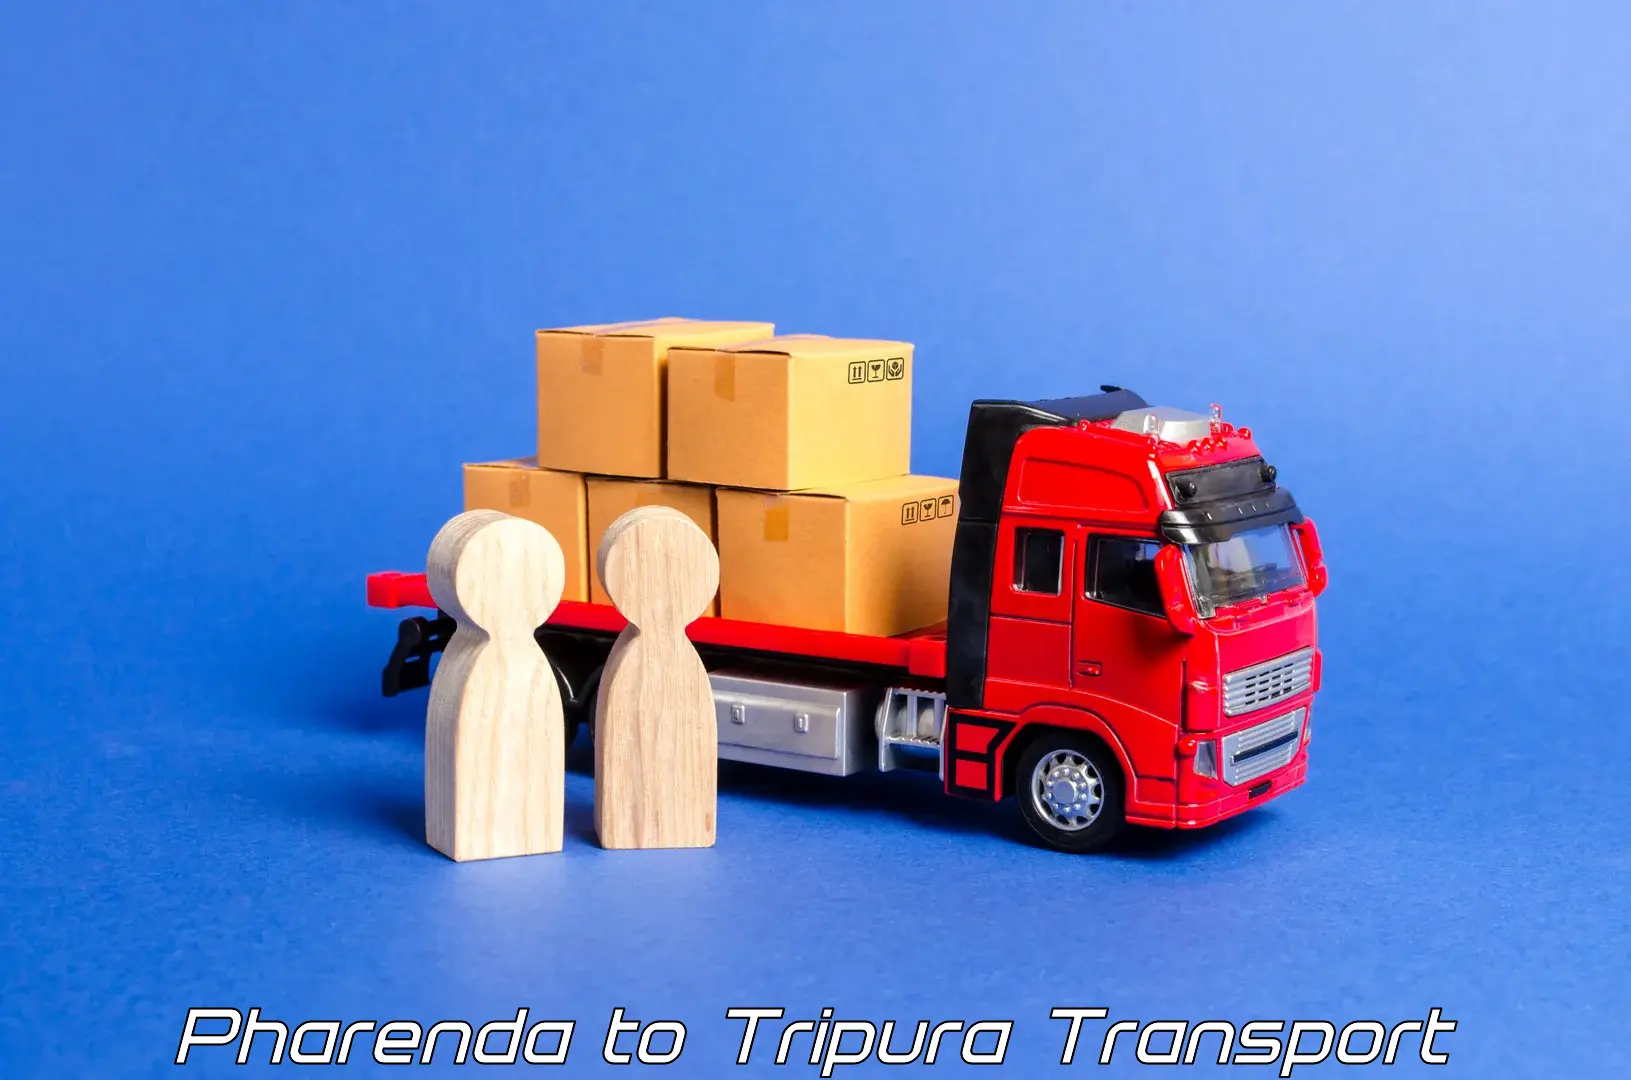 Container transport service Pharenda to Udaipur Tripura